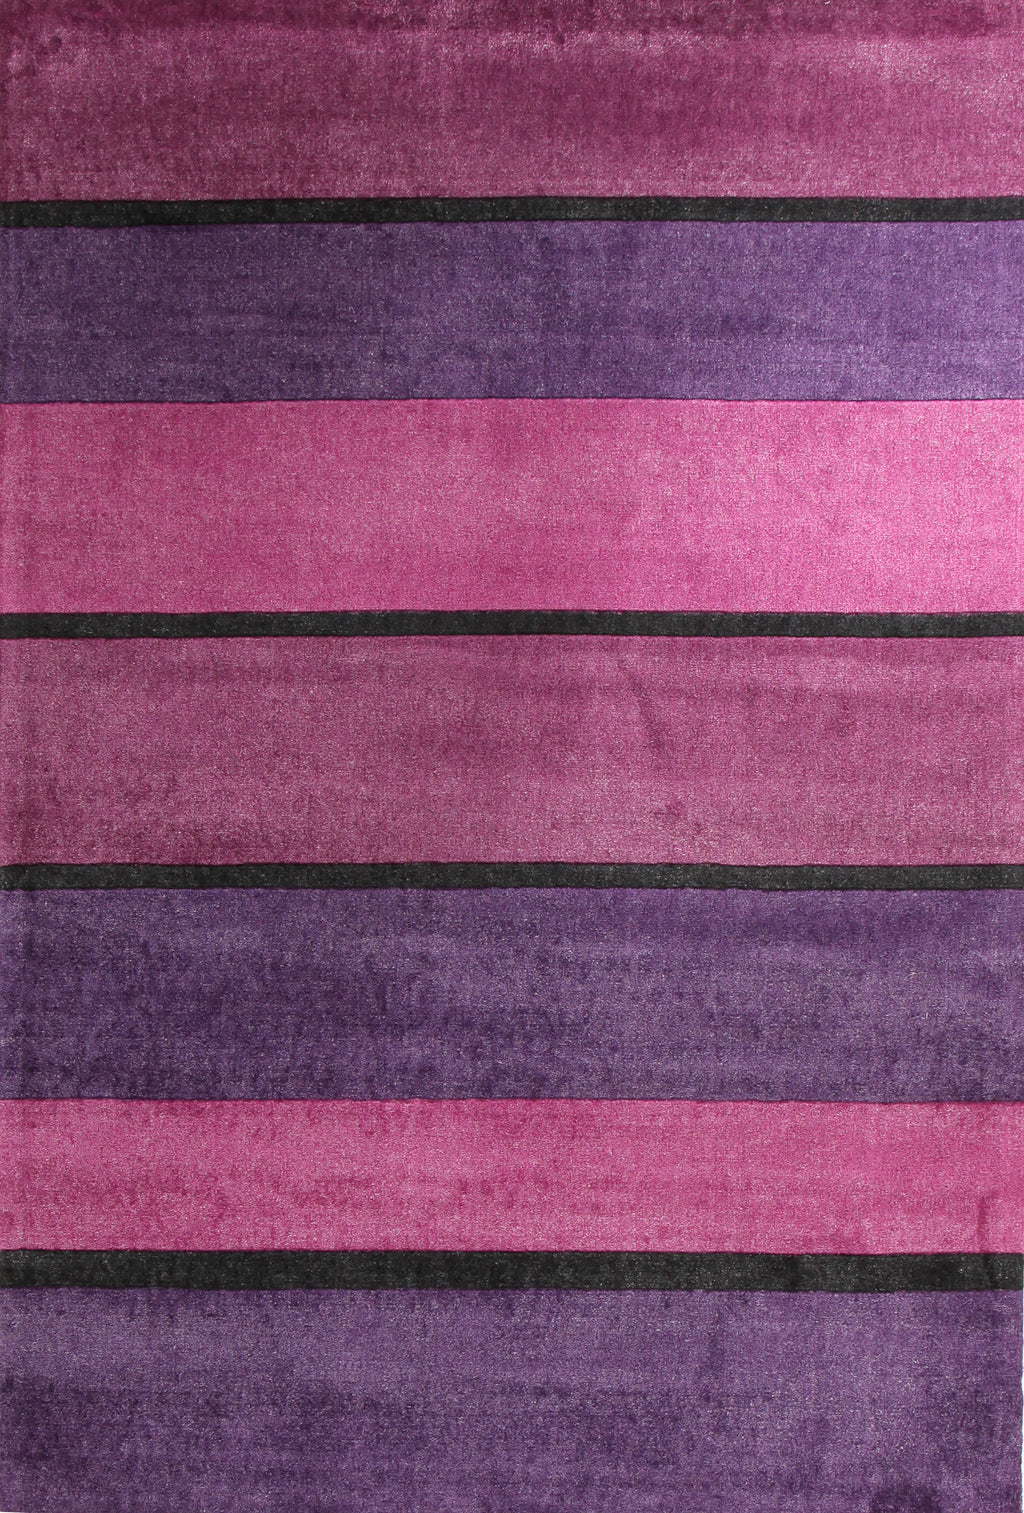 Harper Purples Stripes Rug